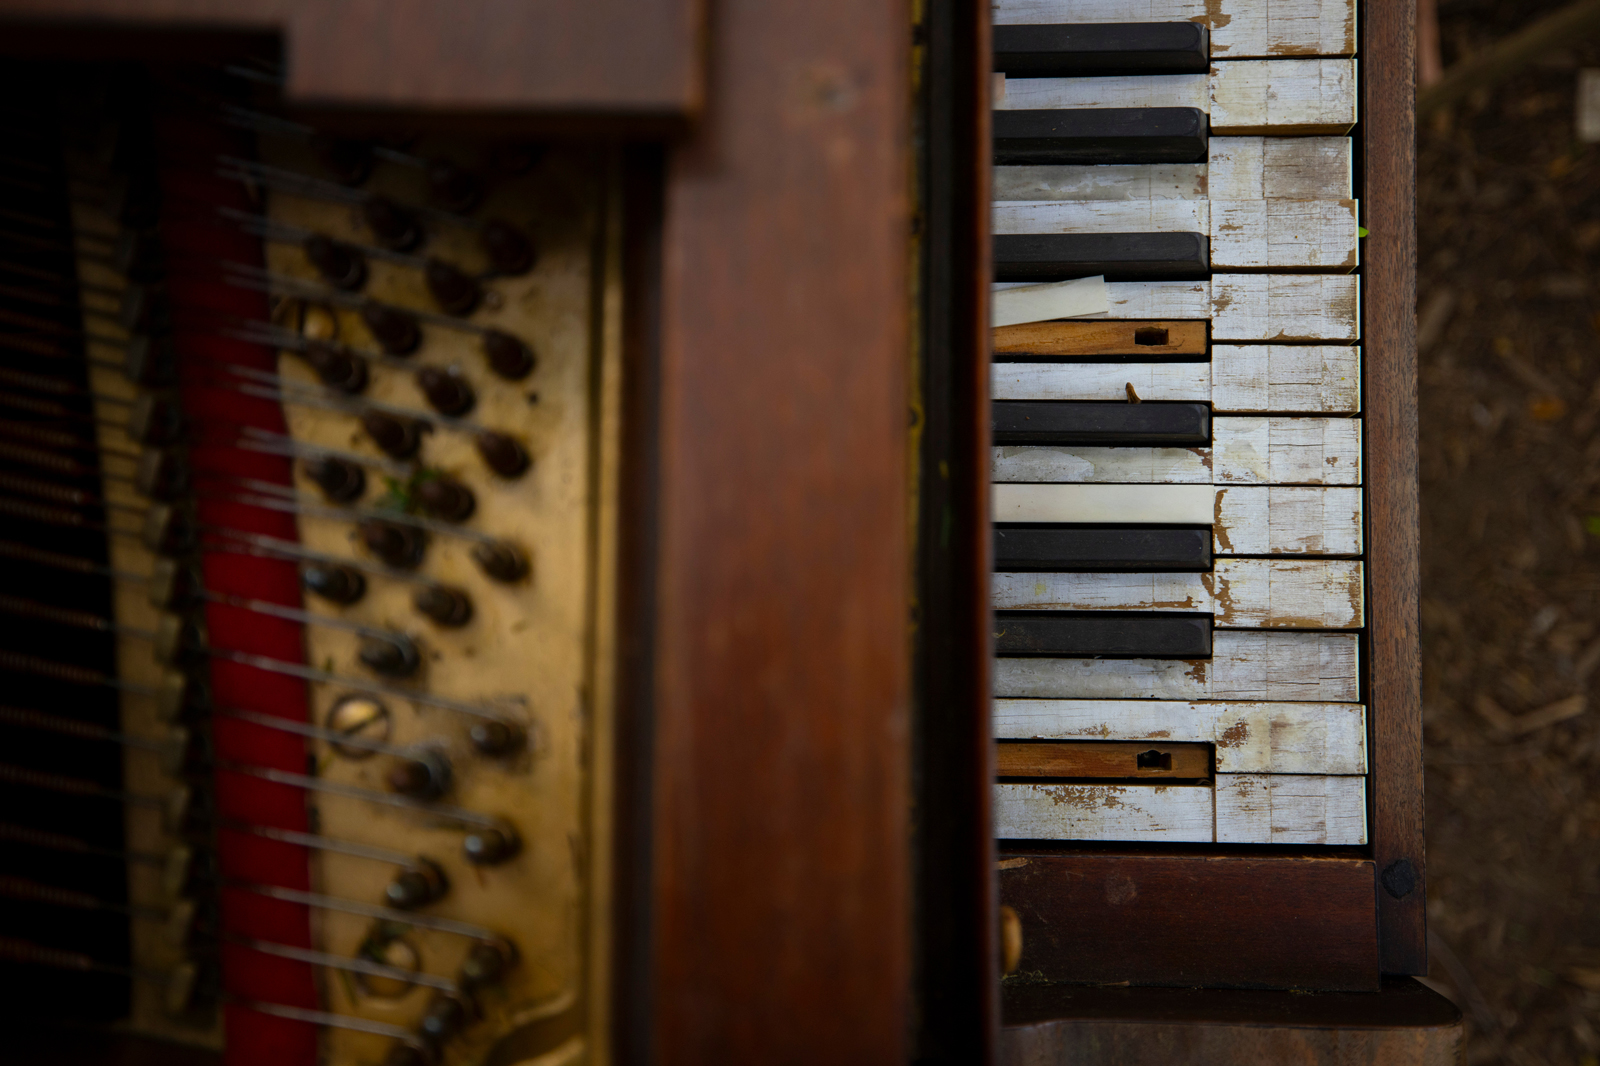 detail shot of piano keys in disrepair